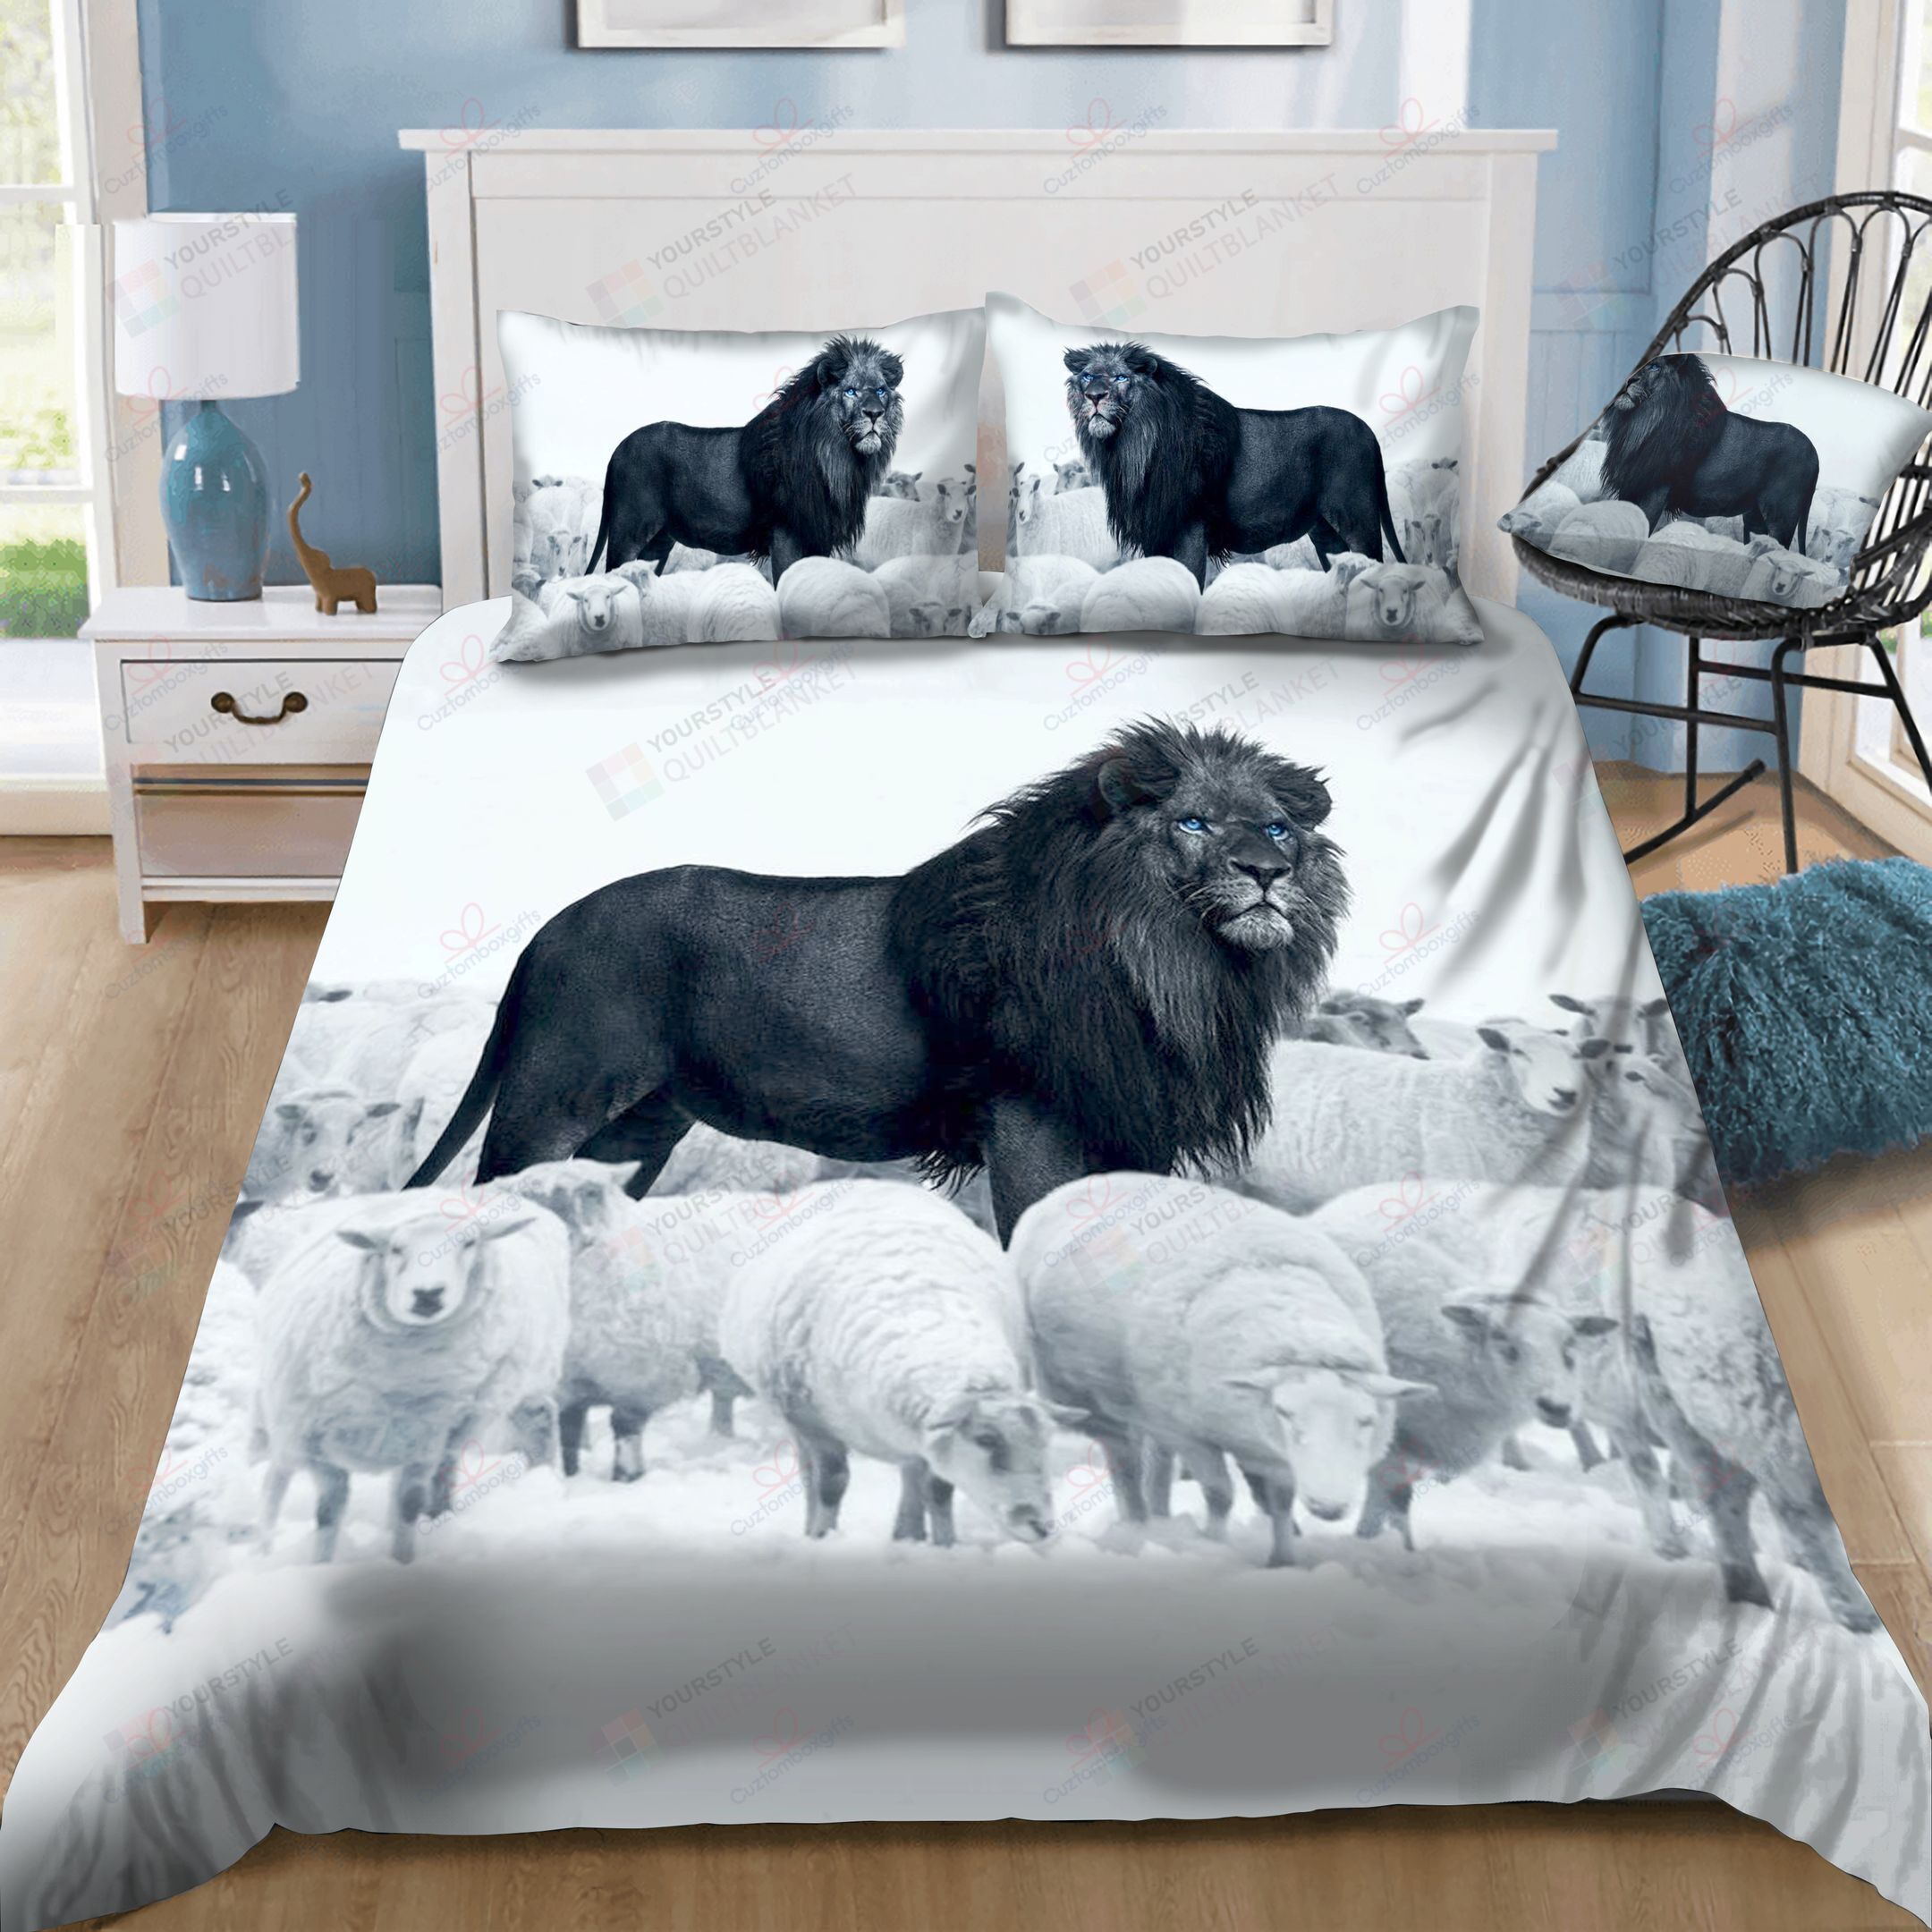 Black Lion Amongst Sheep Bedding Set Bed Sheets Spread Comforter Duvet Cover Bedding Sets